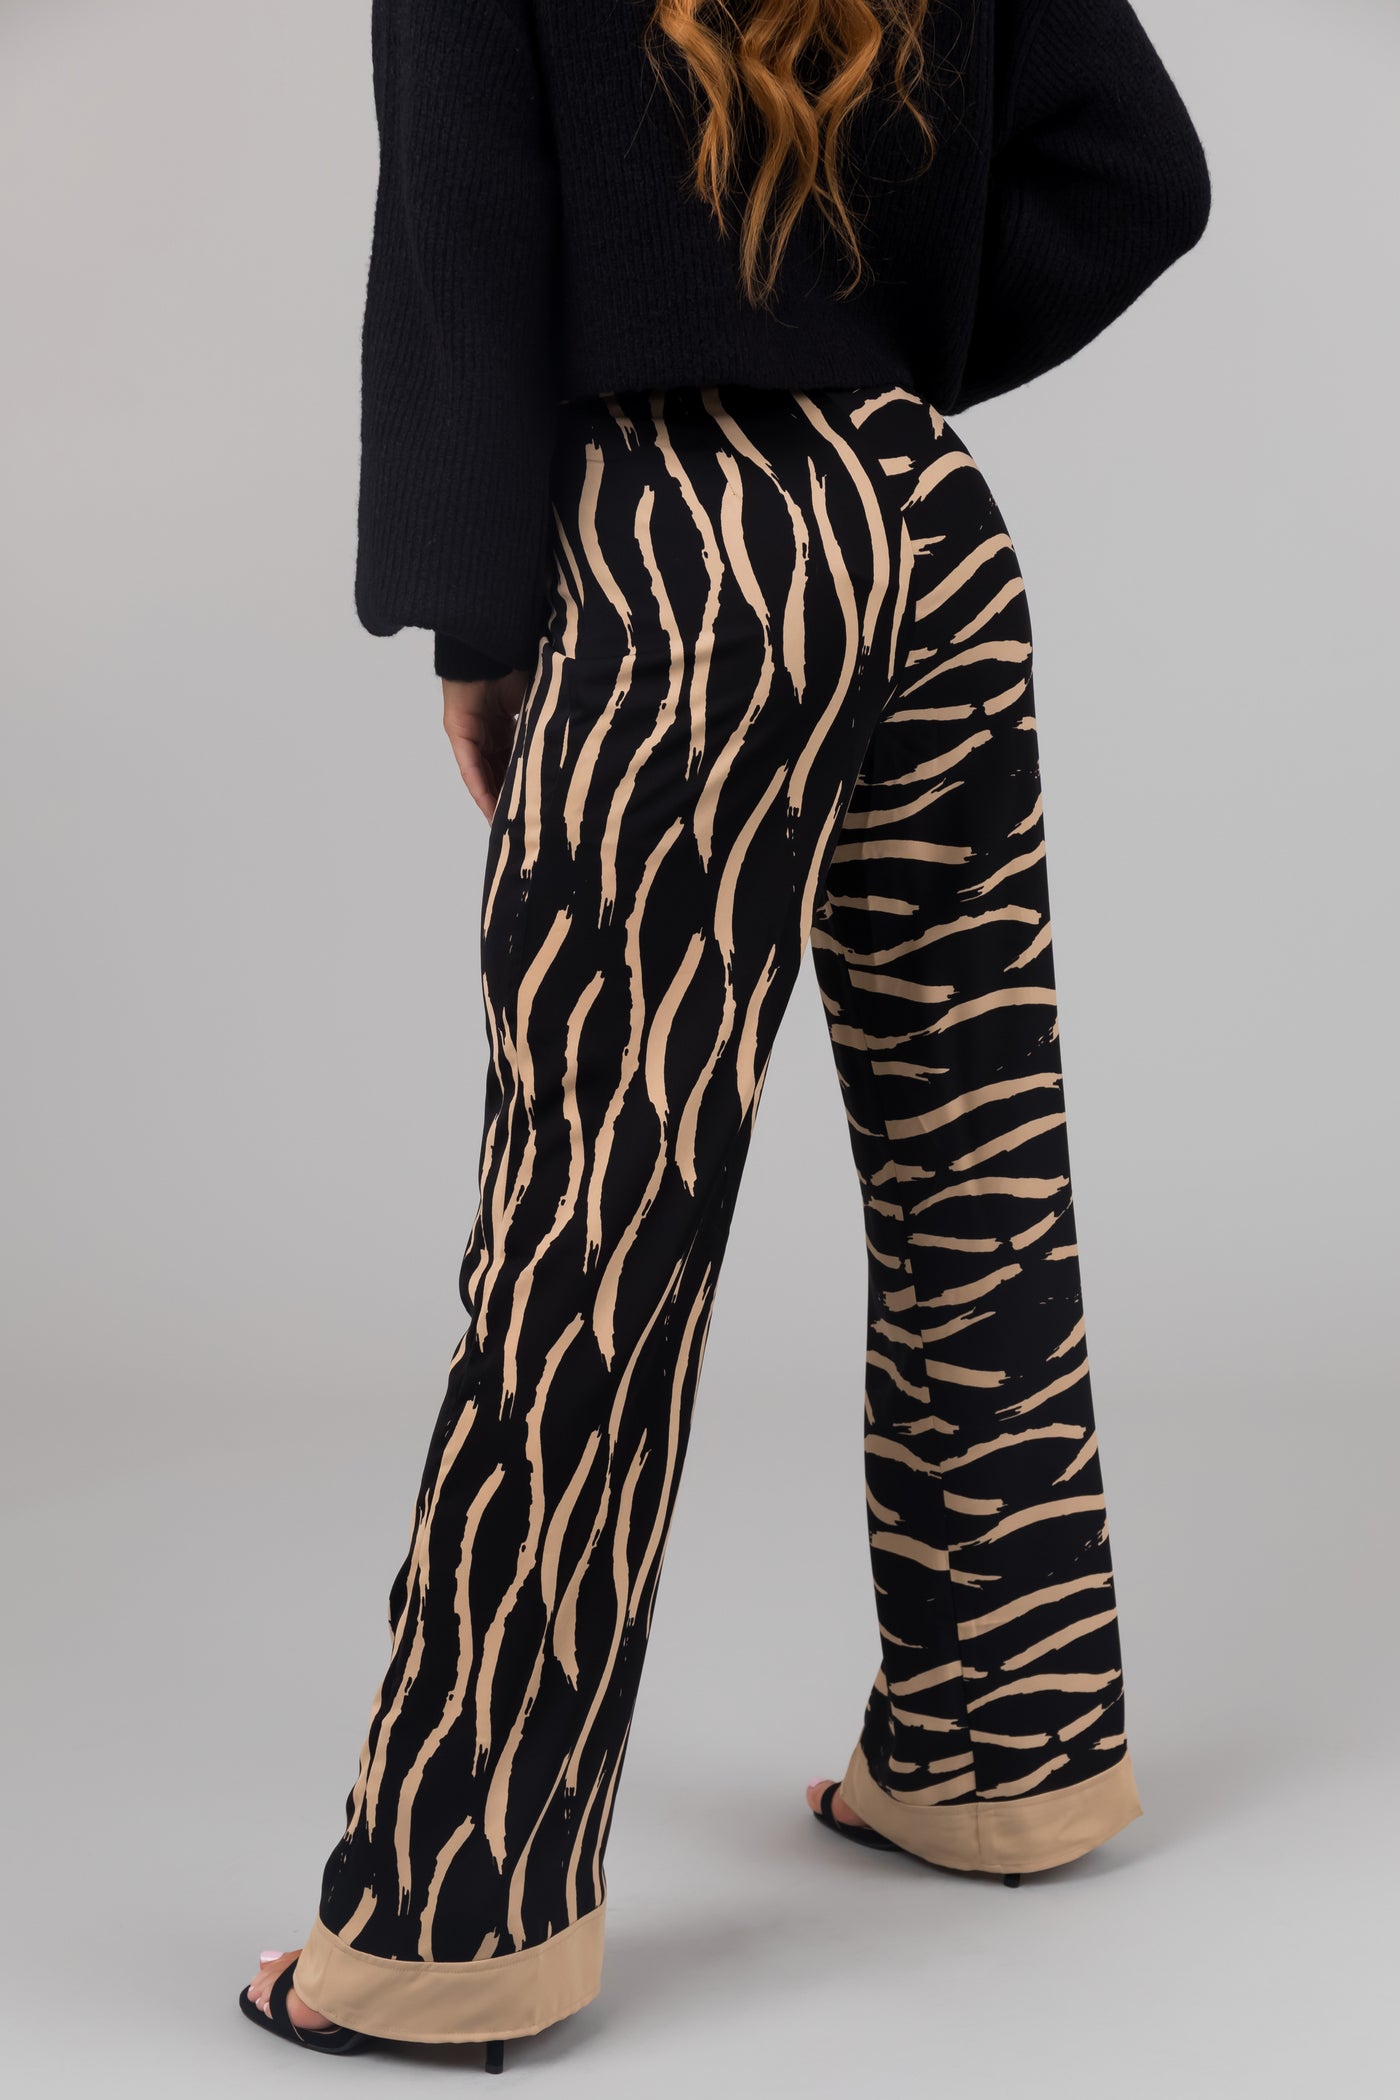 Black and Beige Zebra Print Pants